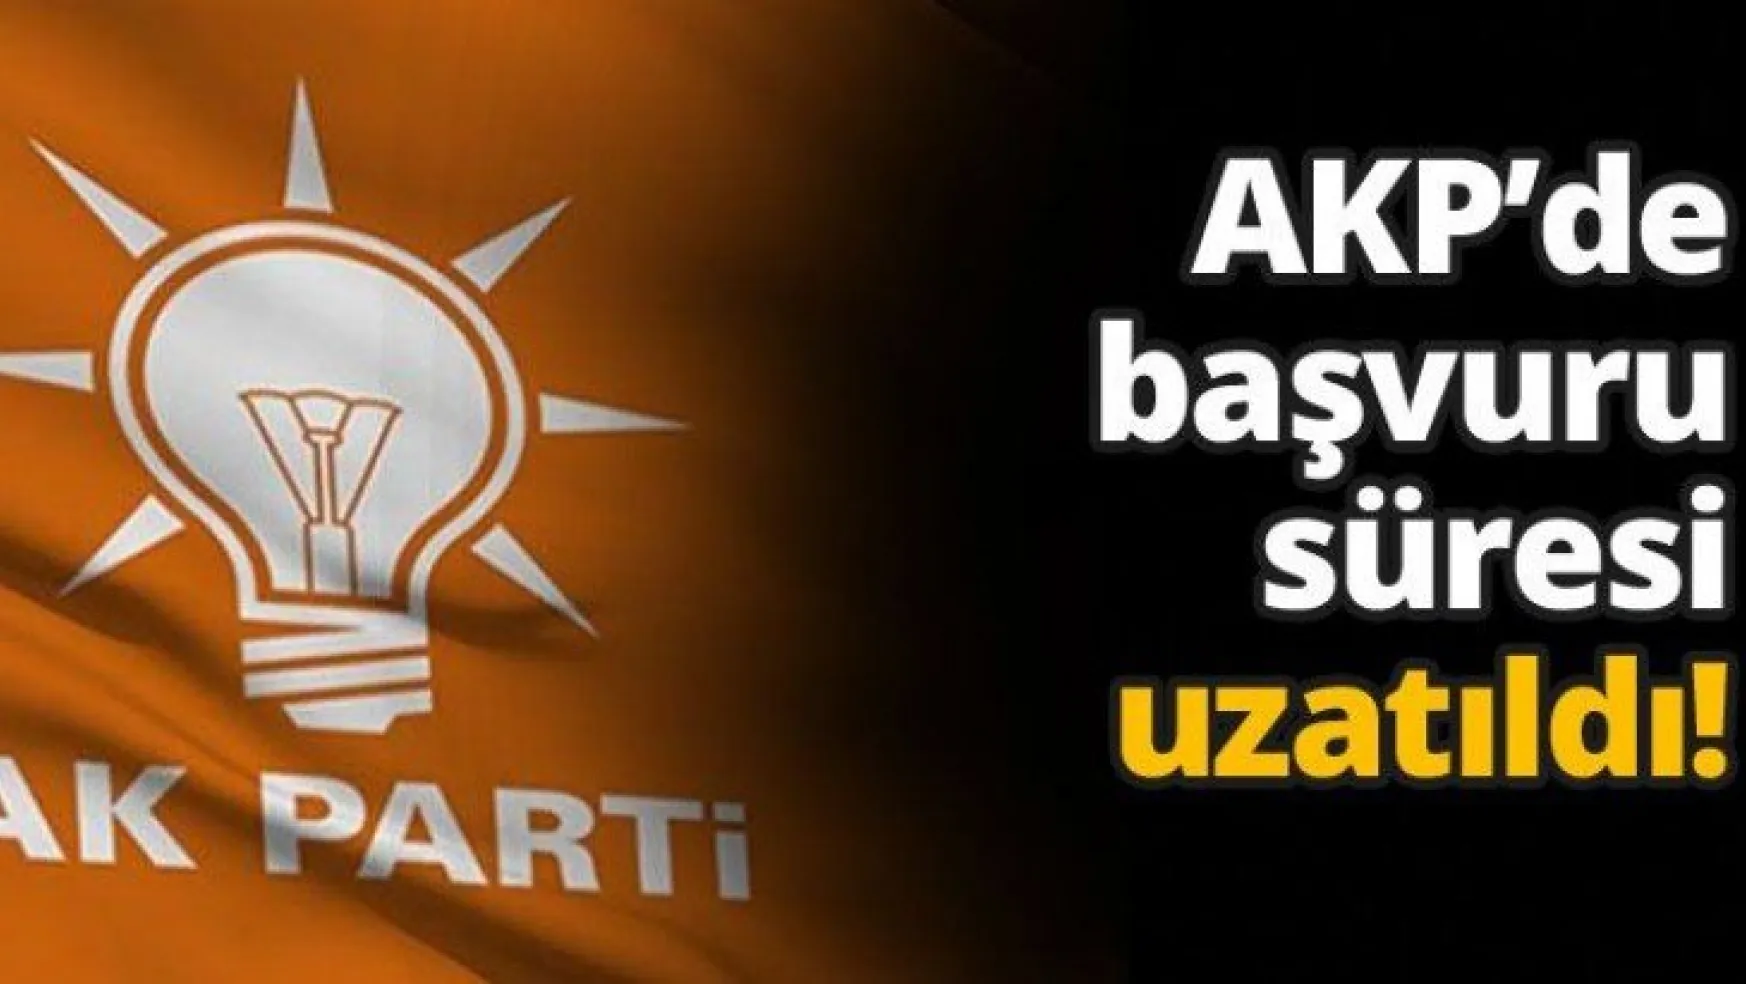 AKP'de başvuru süresi uzatıldı!